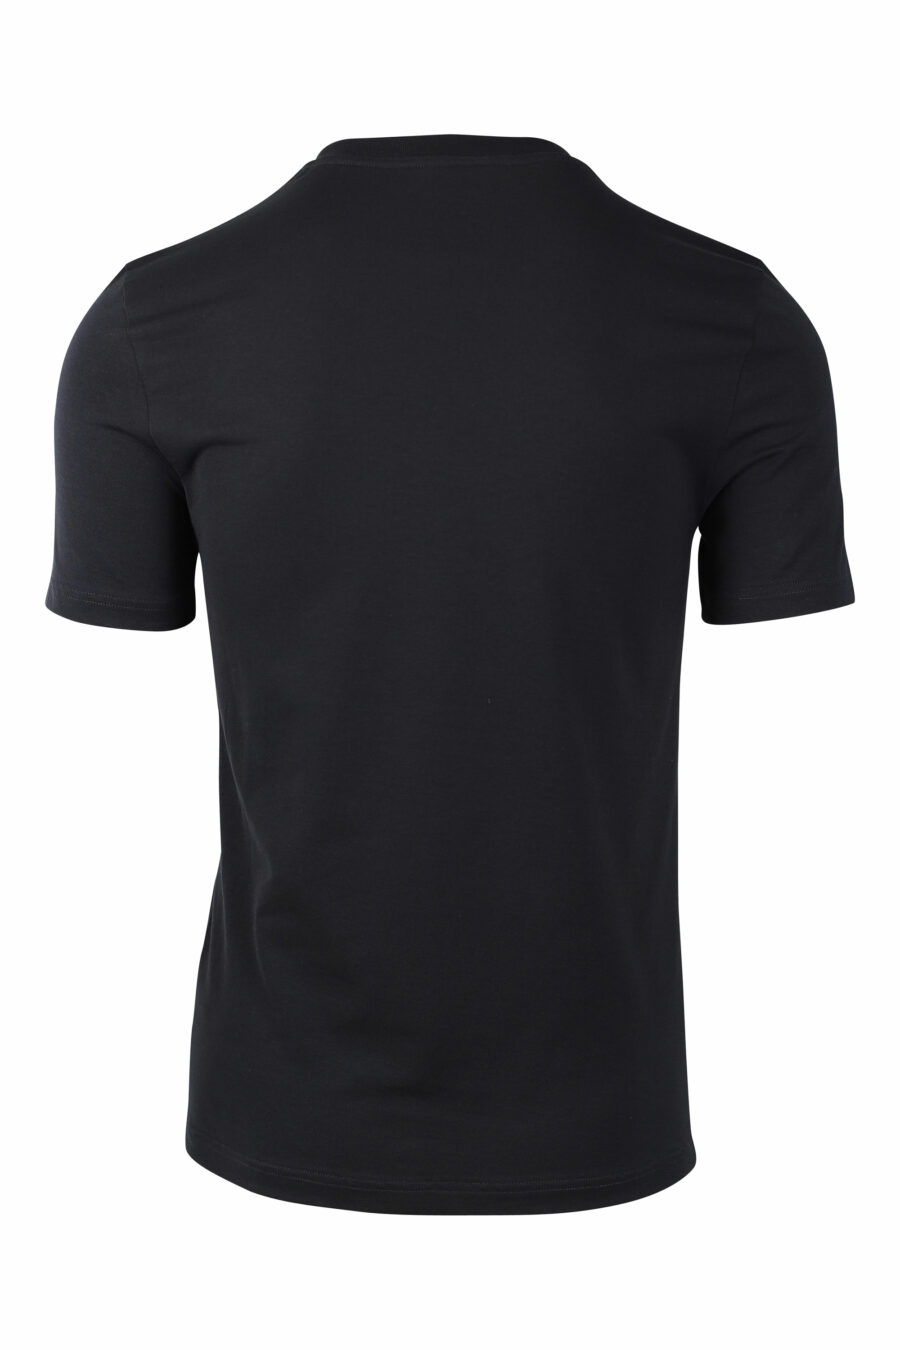 Camiseta negra con logo "signature" - IMG 1486